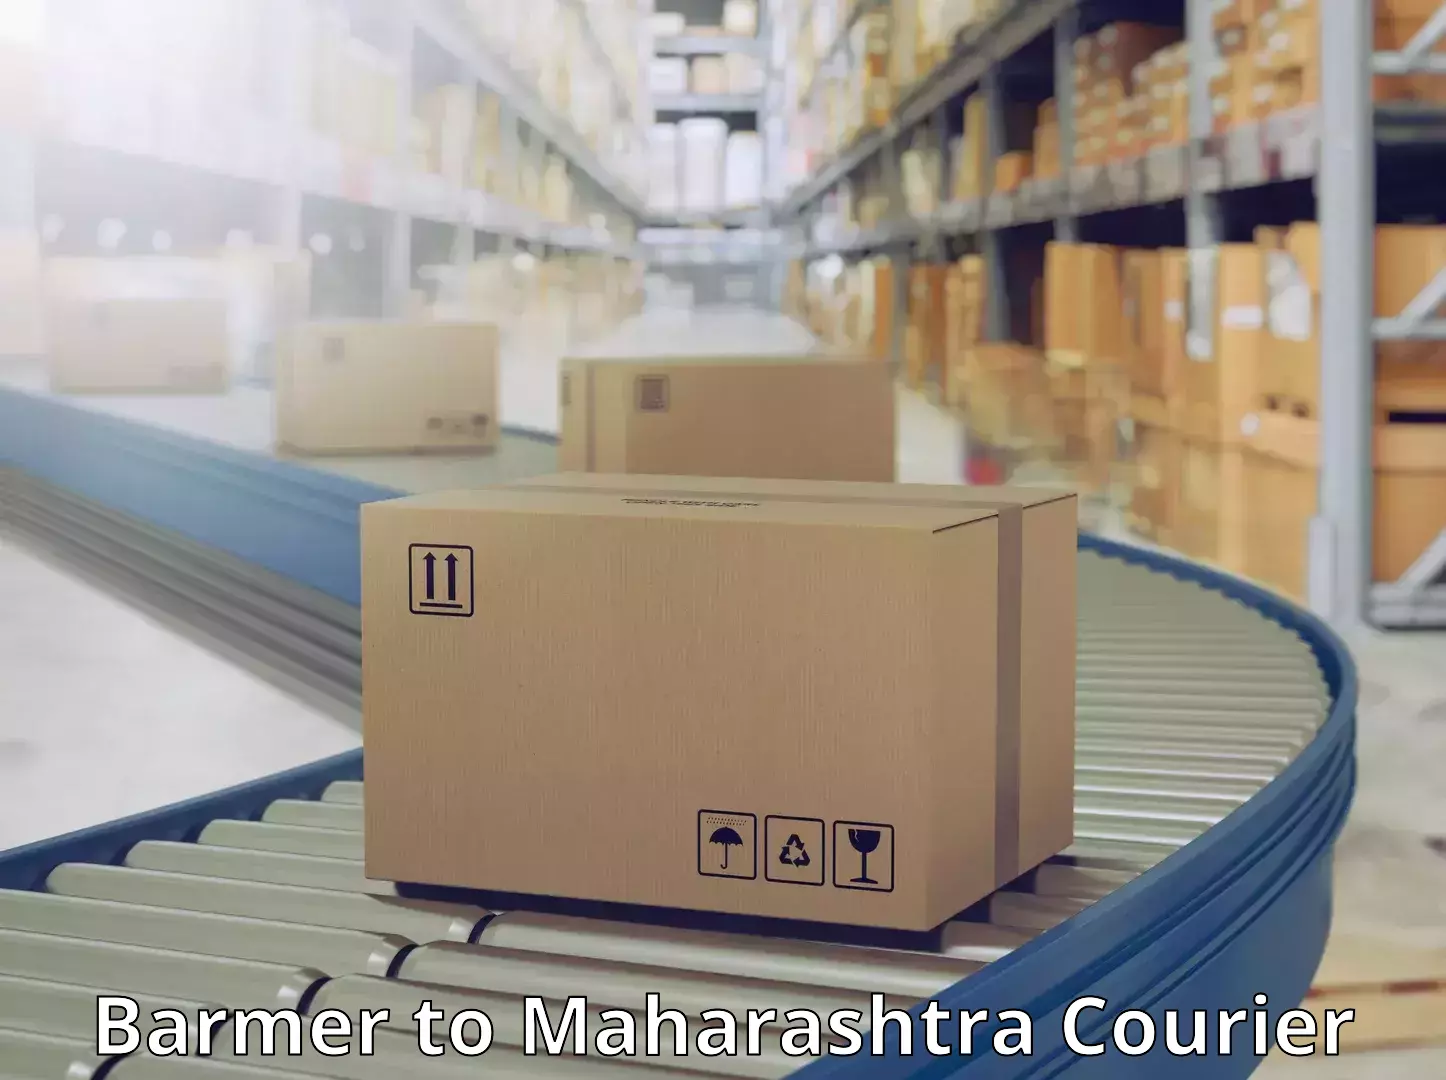 Express logistics Barmer to Maharashtra